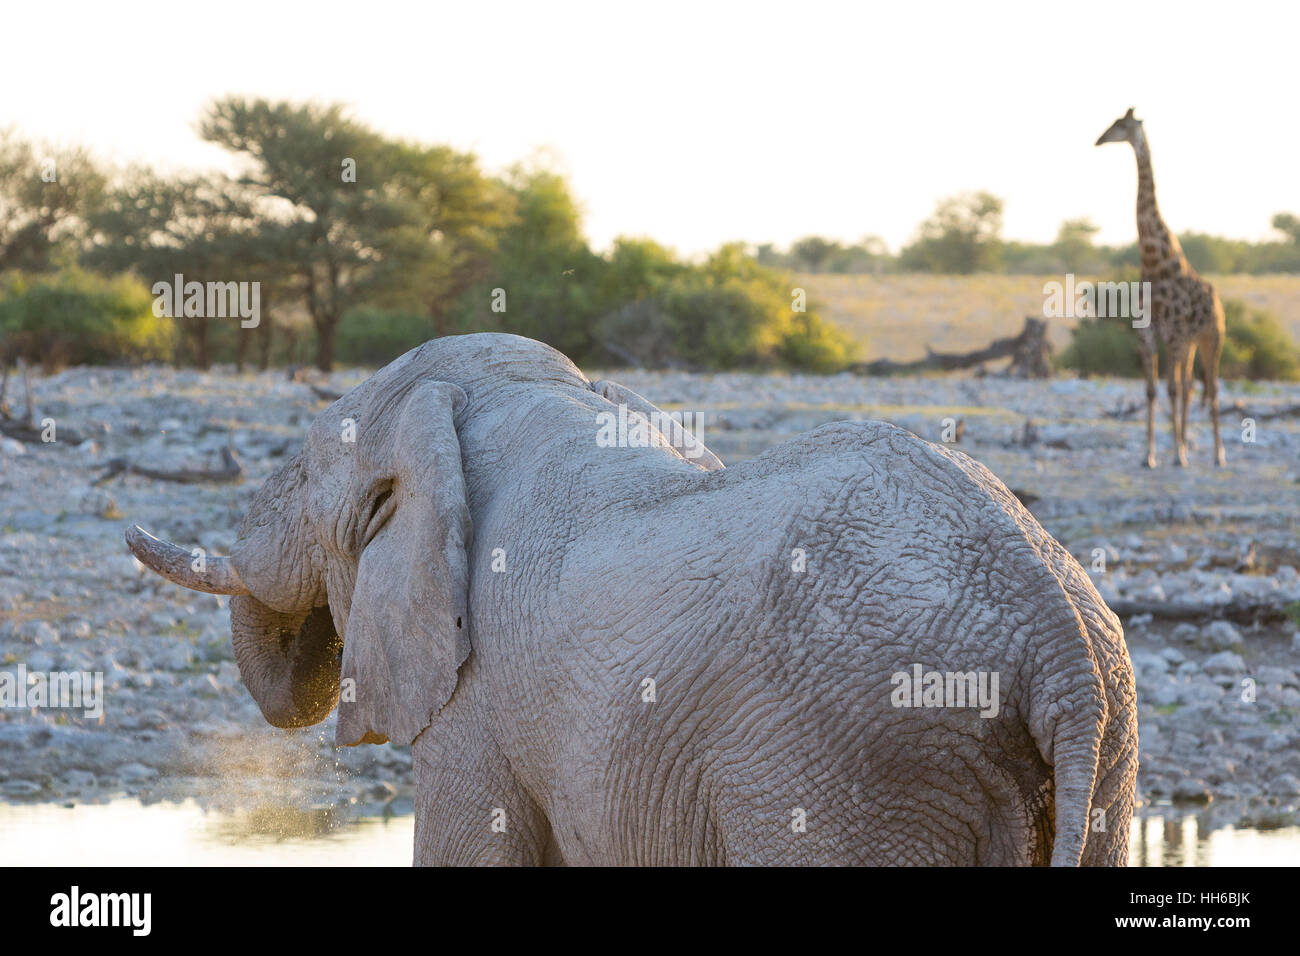 Etosha National Park, Namibia. African elephant (Loxodonta africana) drinking. Giraffe in background. Stock Photo